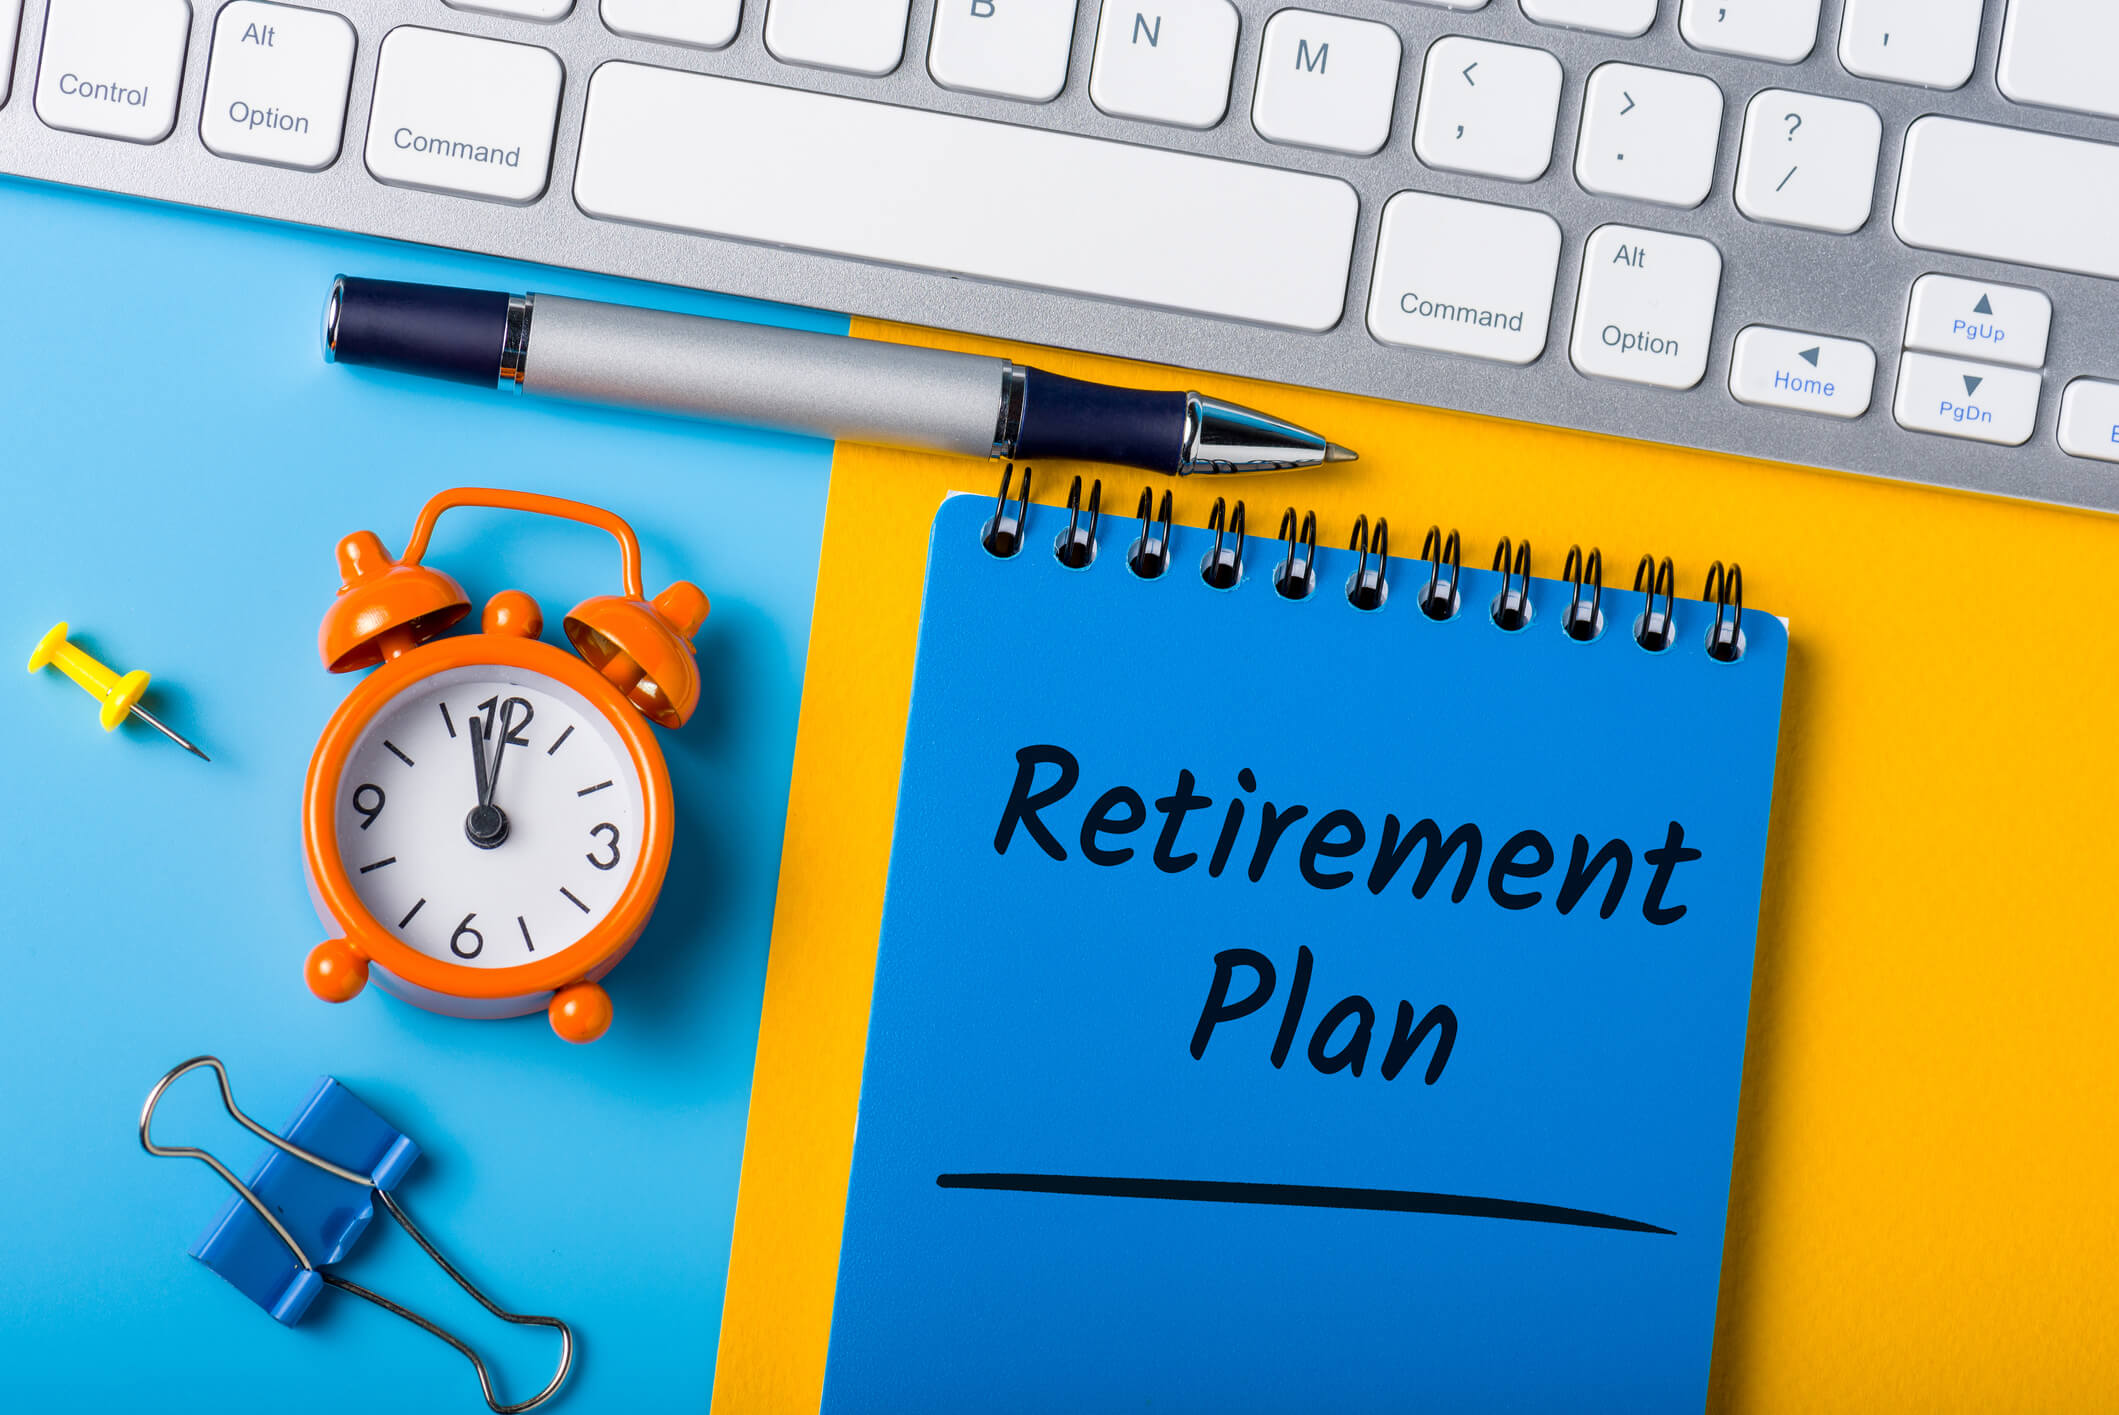 Retirement Plans - Complete Controller